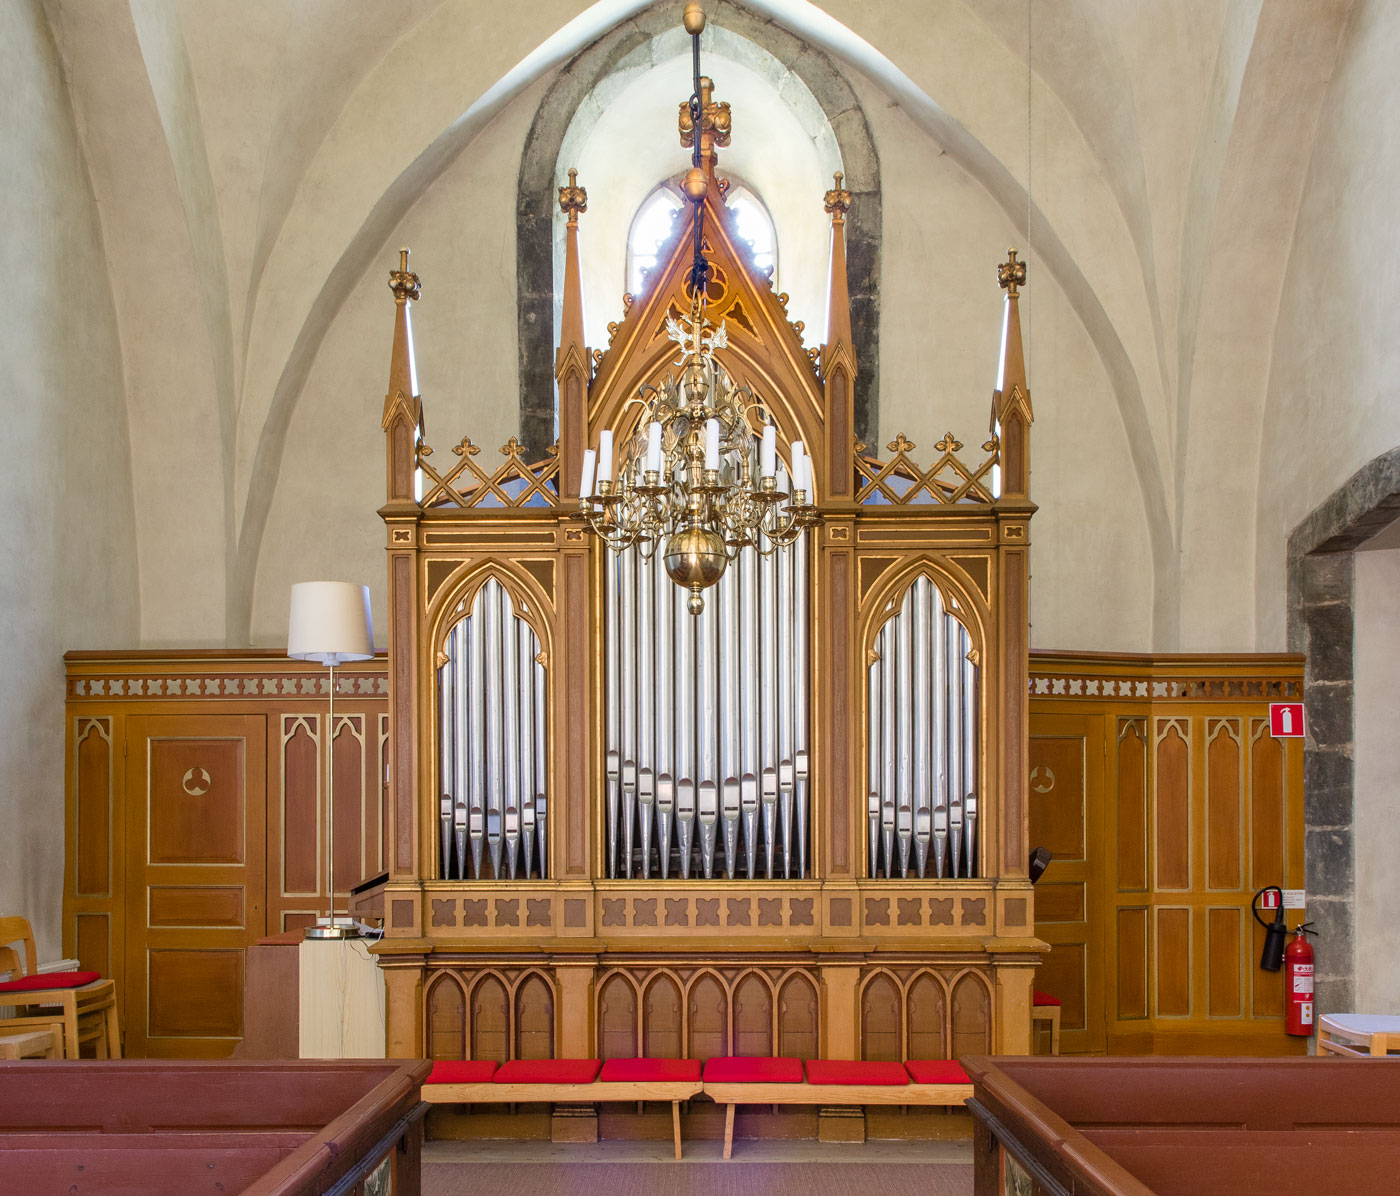 Orgel - Rone kyrka